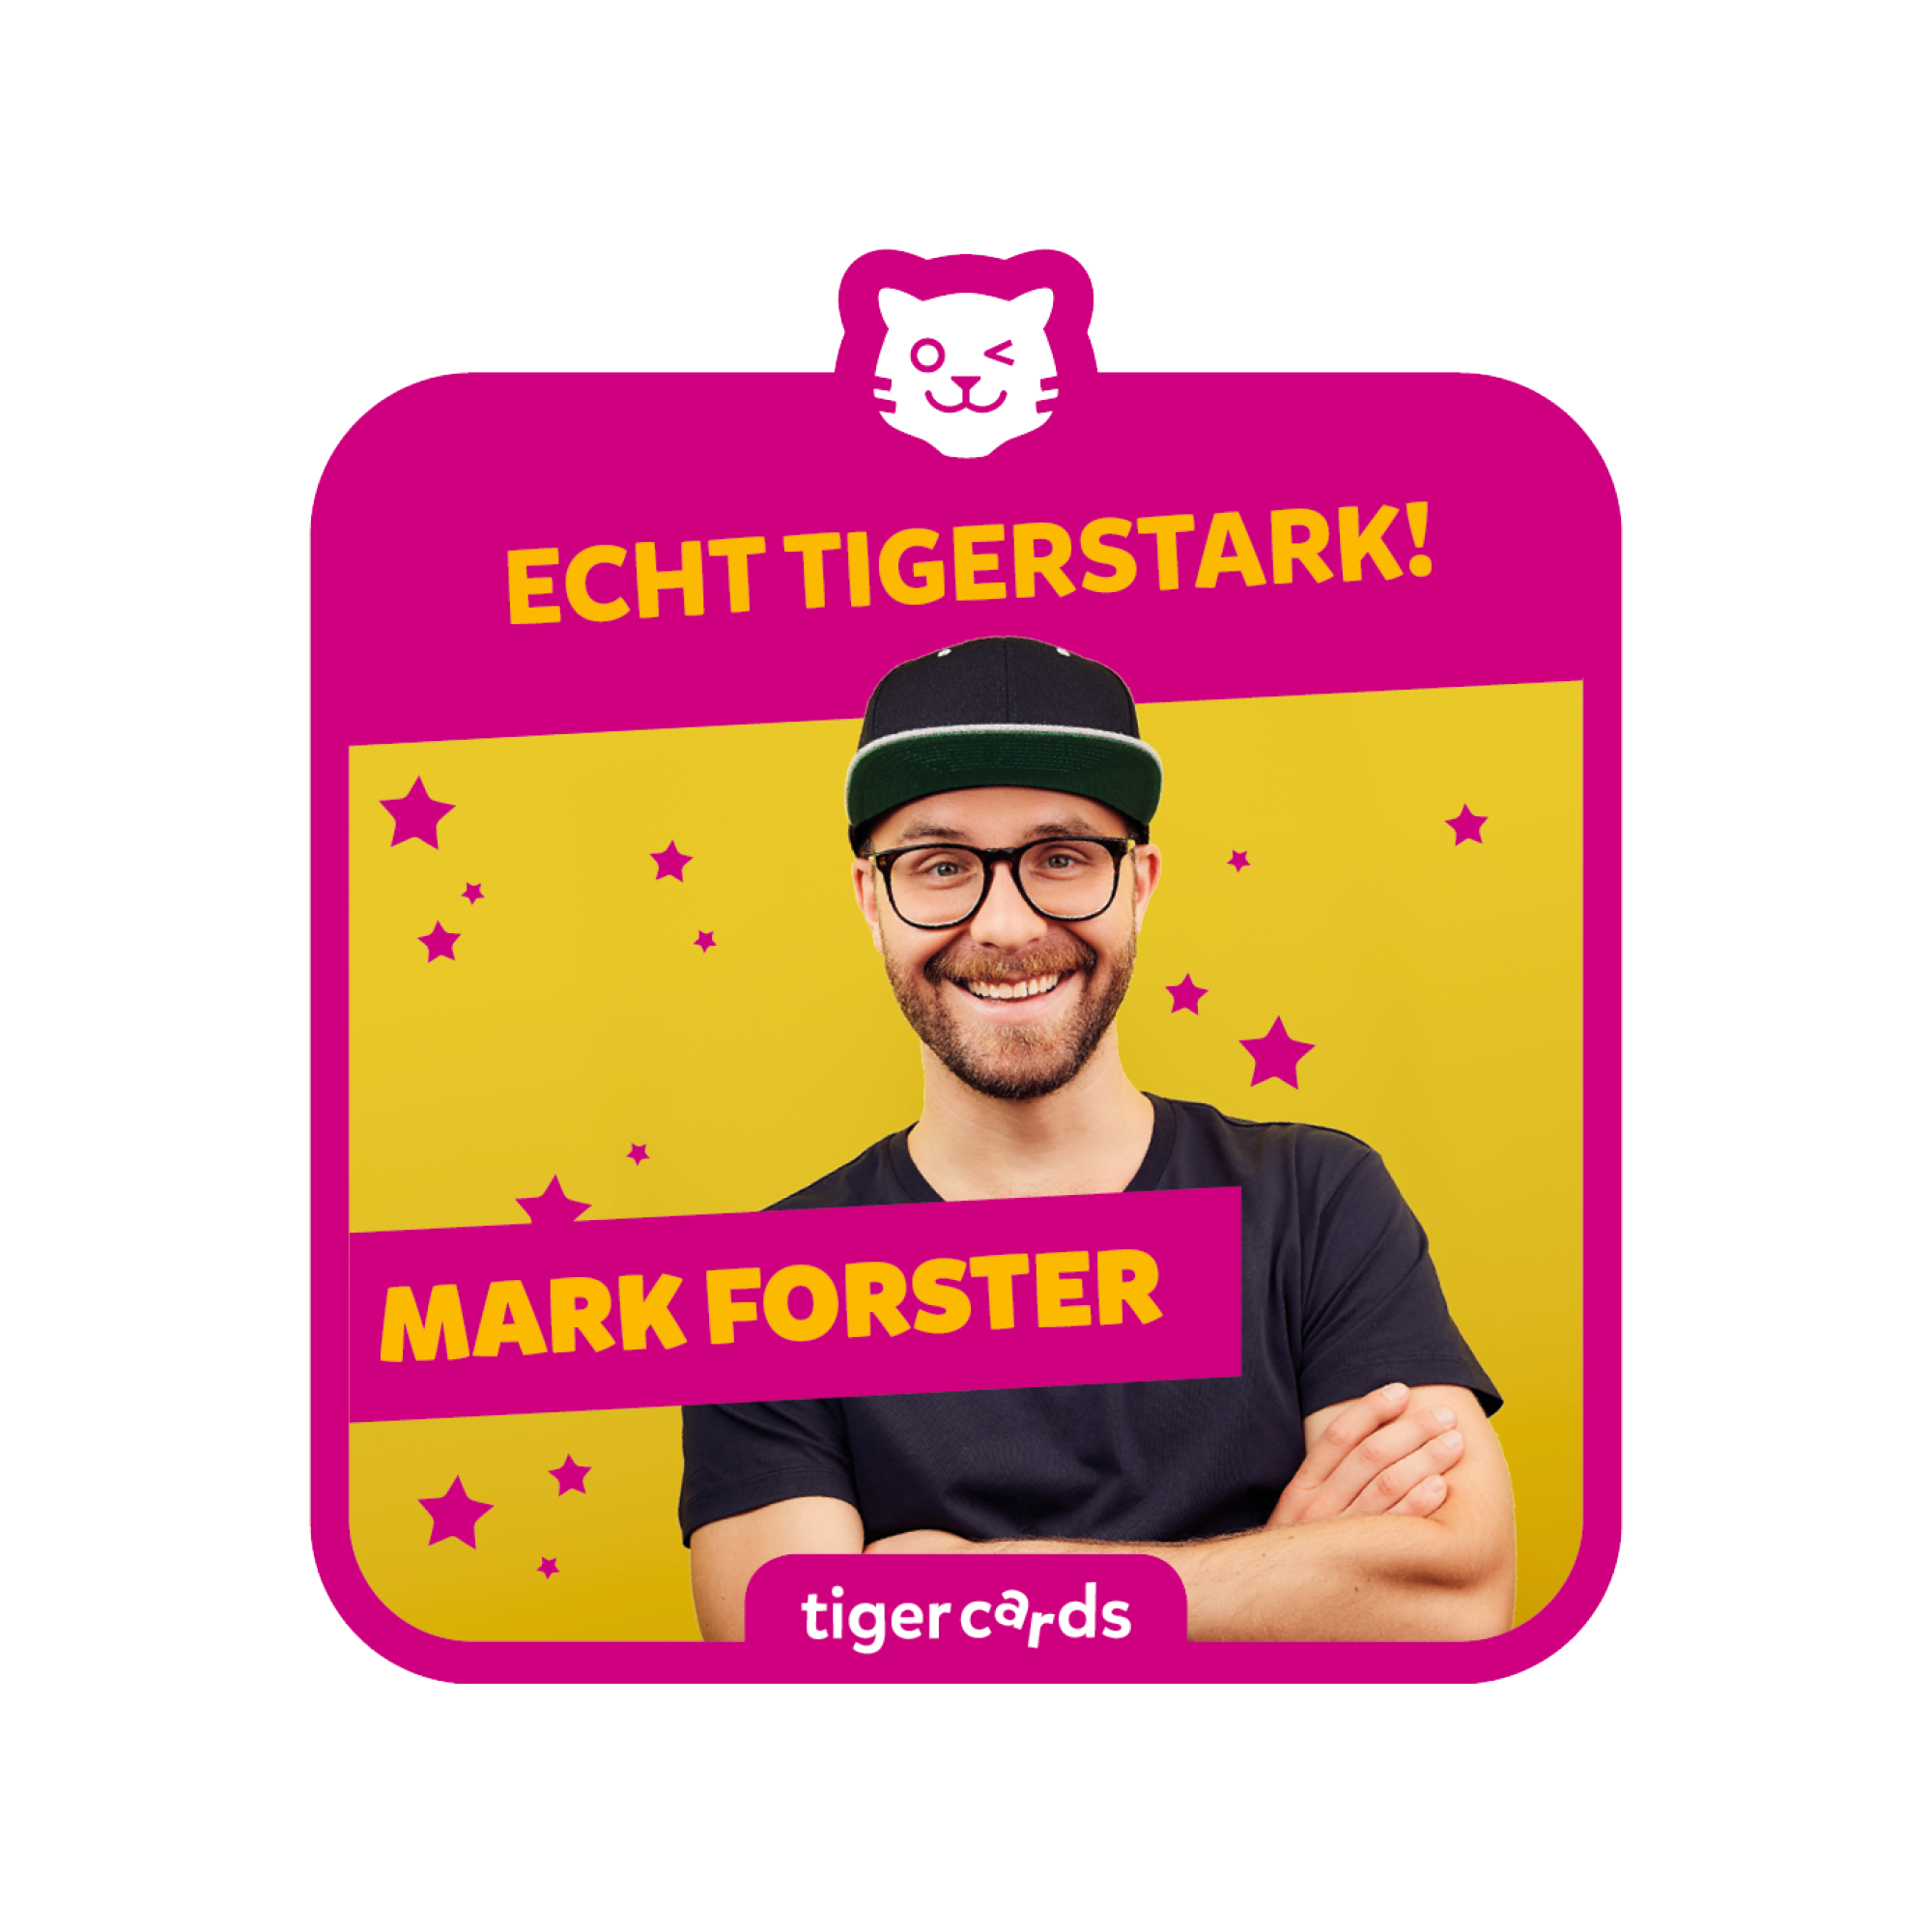 tigercard - Mark Forster: Echt tigerstark! (Exklusive Zusammenstellung)